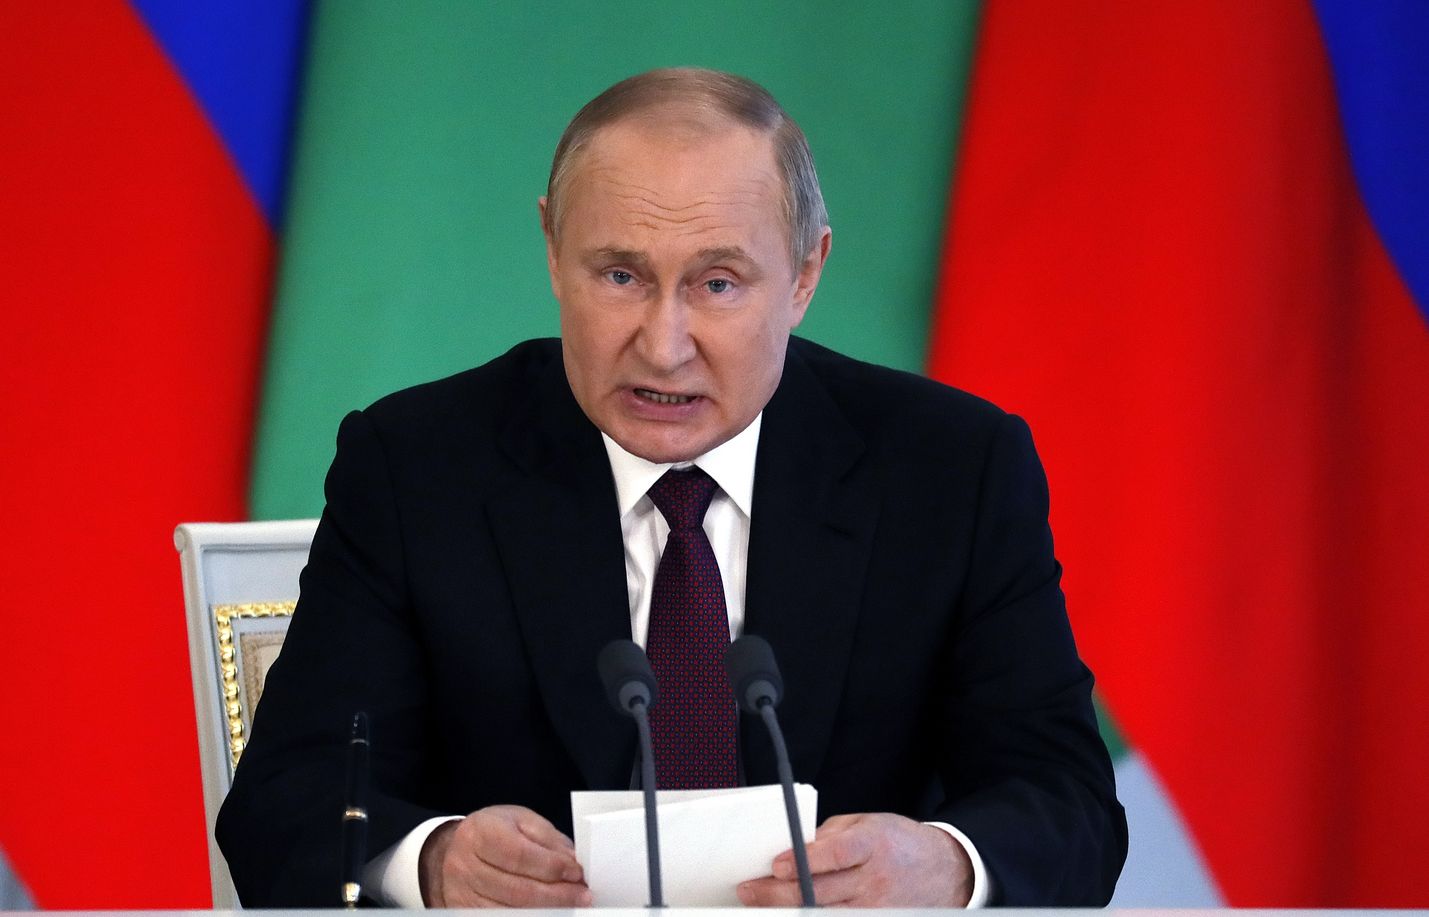 Venäjän johtajaa on toistuvasti arveltu sairaaksi ja joidenkin mielestä hän on hullu. Hän kykenee kuitenkin toteuttamaan johdonmukaisesti suunnitelmiaan sekä määräämään massiivista virkamies- ja sotilaskoneistoa. Putin piti 10. kesäkuuta lehdistötilaisuuden Turkmenistanin presidentin vierellä.